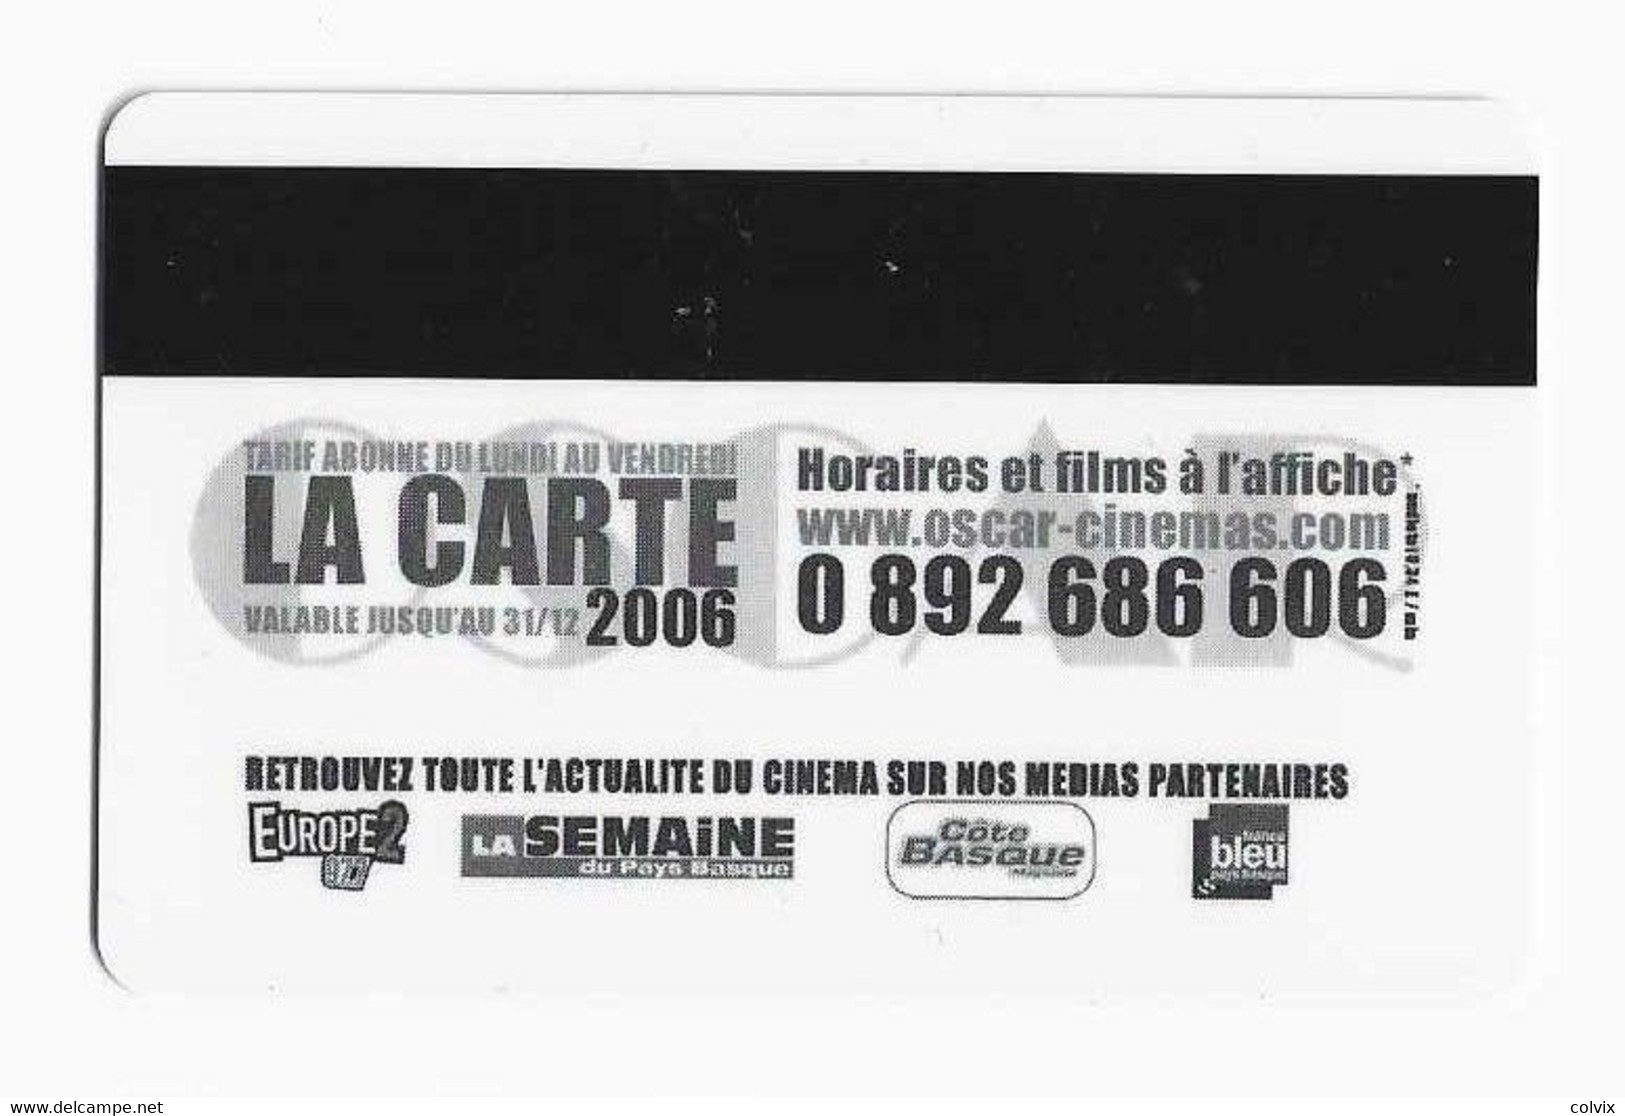 FRANCE CARTE CINEMA OSCAR - Kinokarten